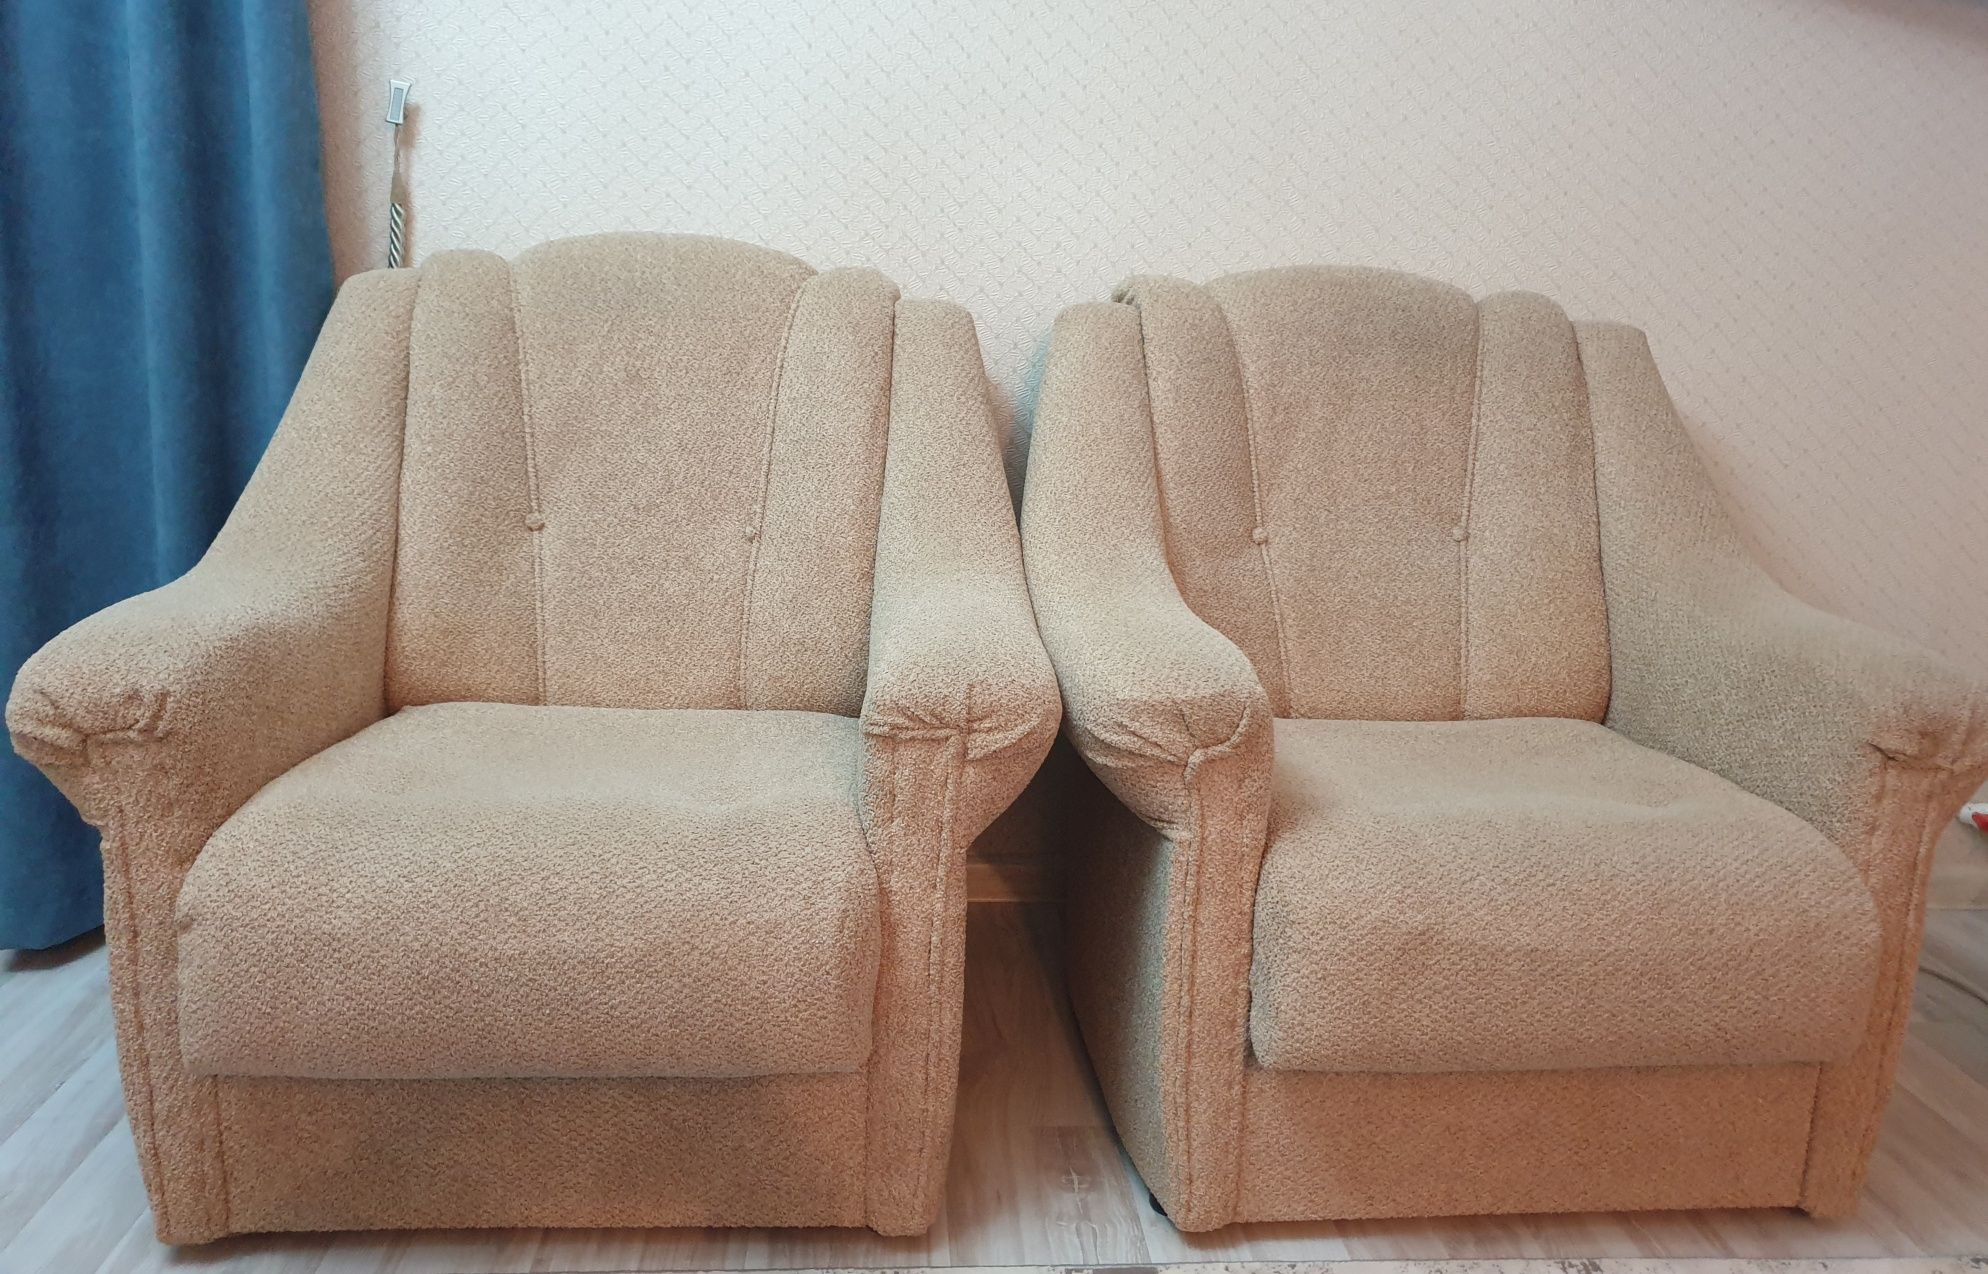 Мягкий уголок кресла 2 штуки + диван 1 штука